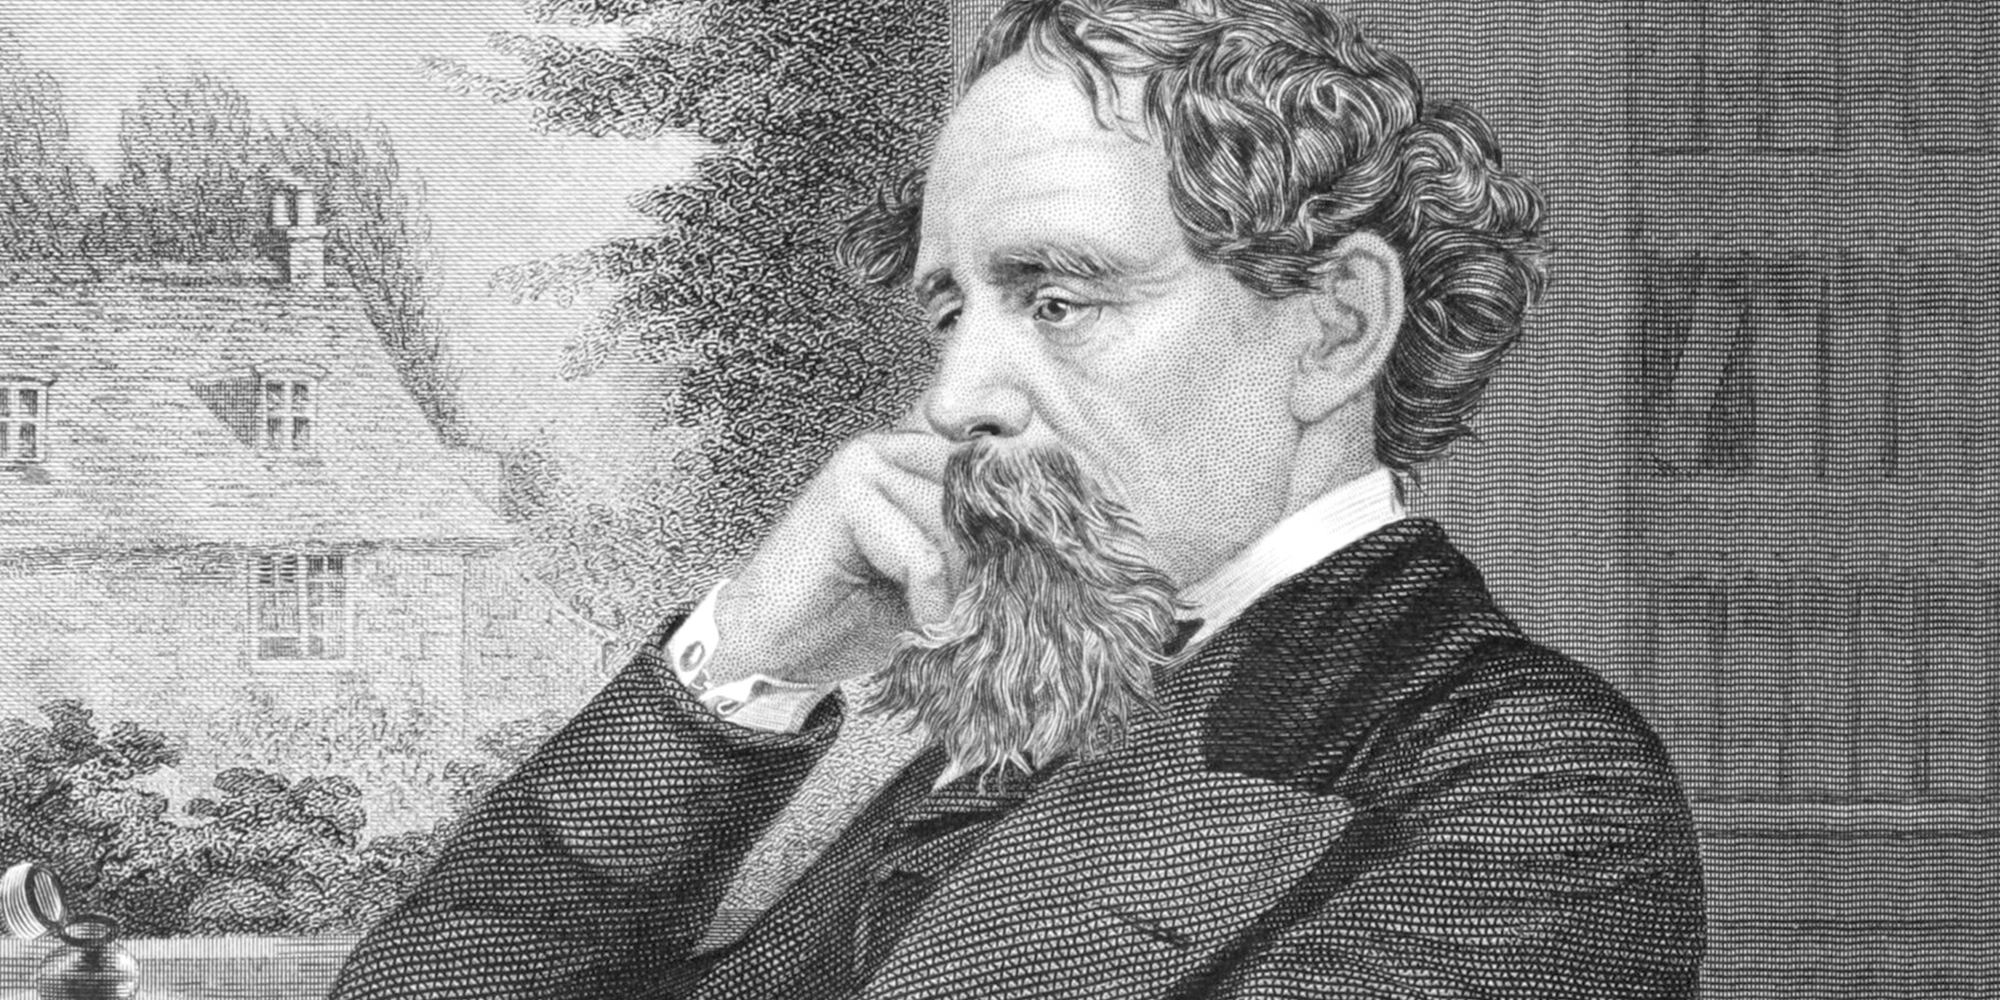 Conheça Charles Dickens, um dos mais famosos romancistas da literatura inglesa